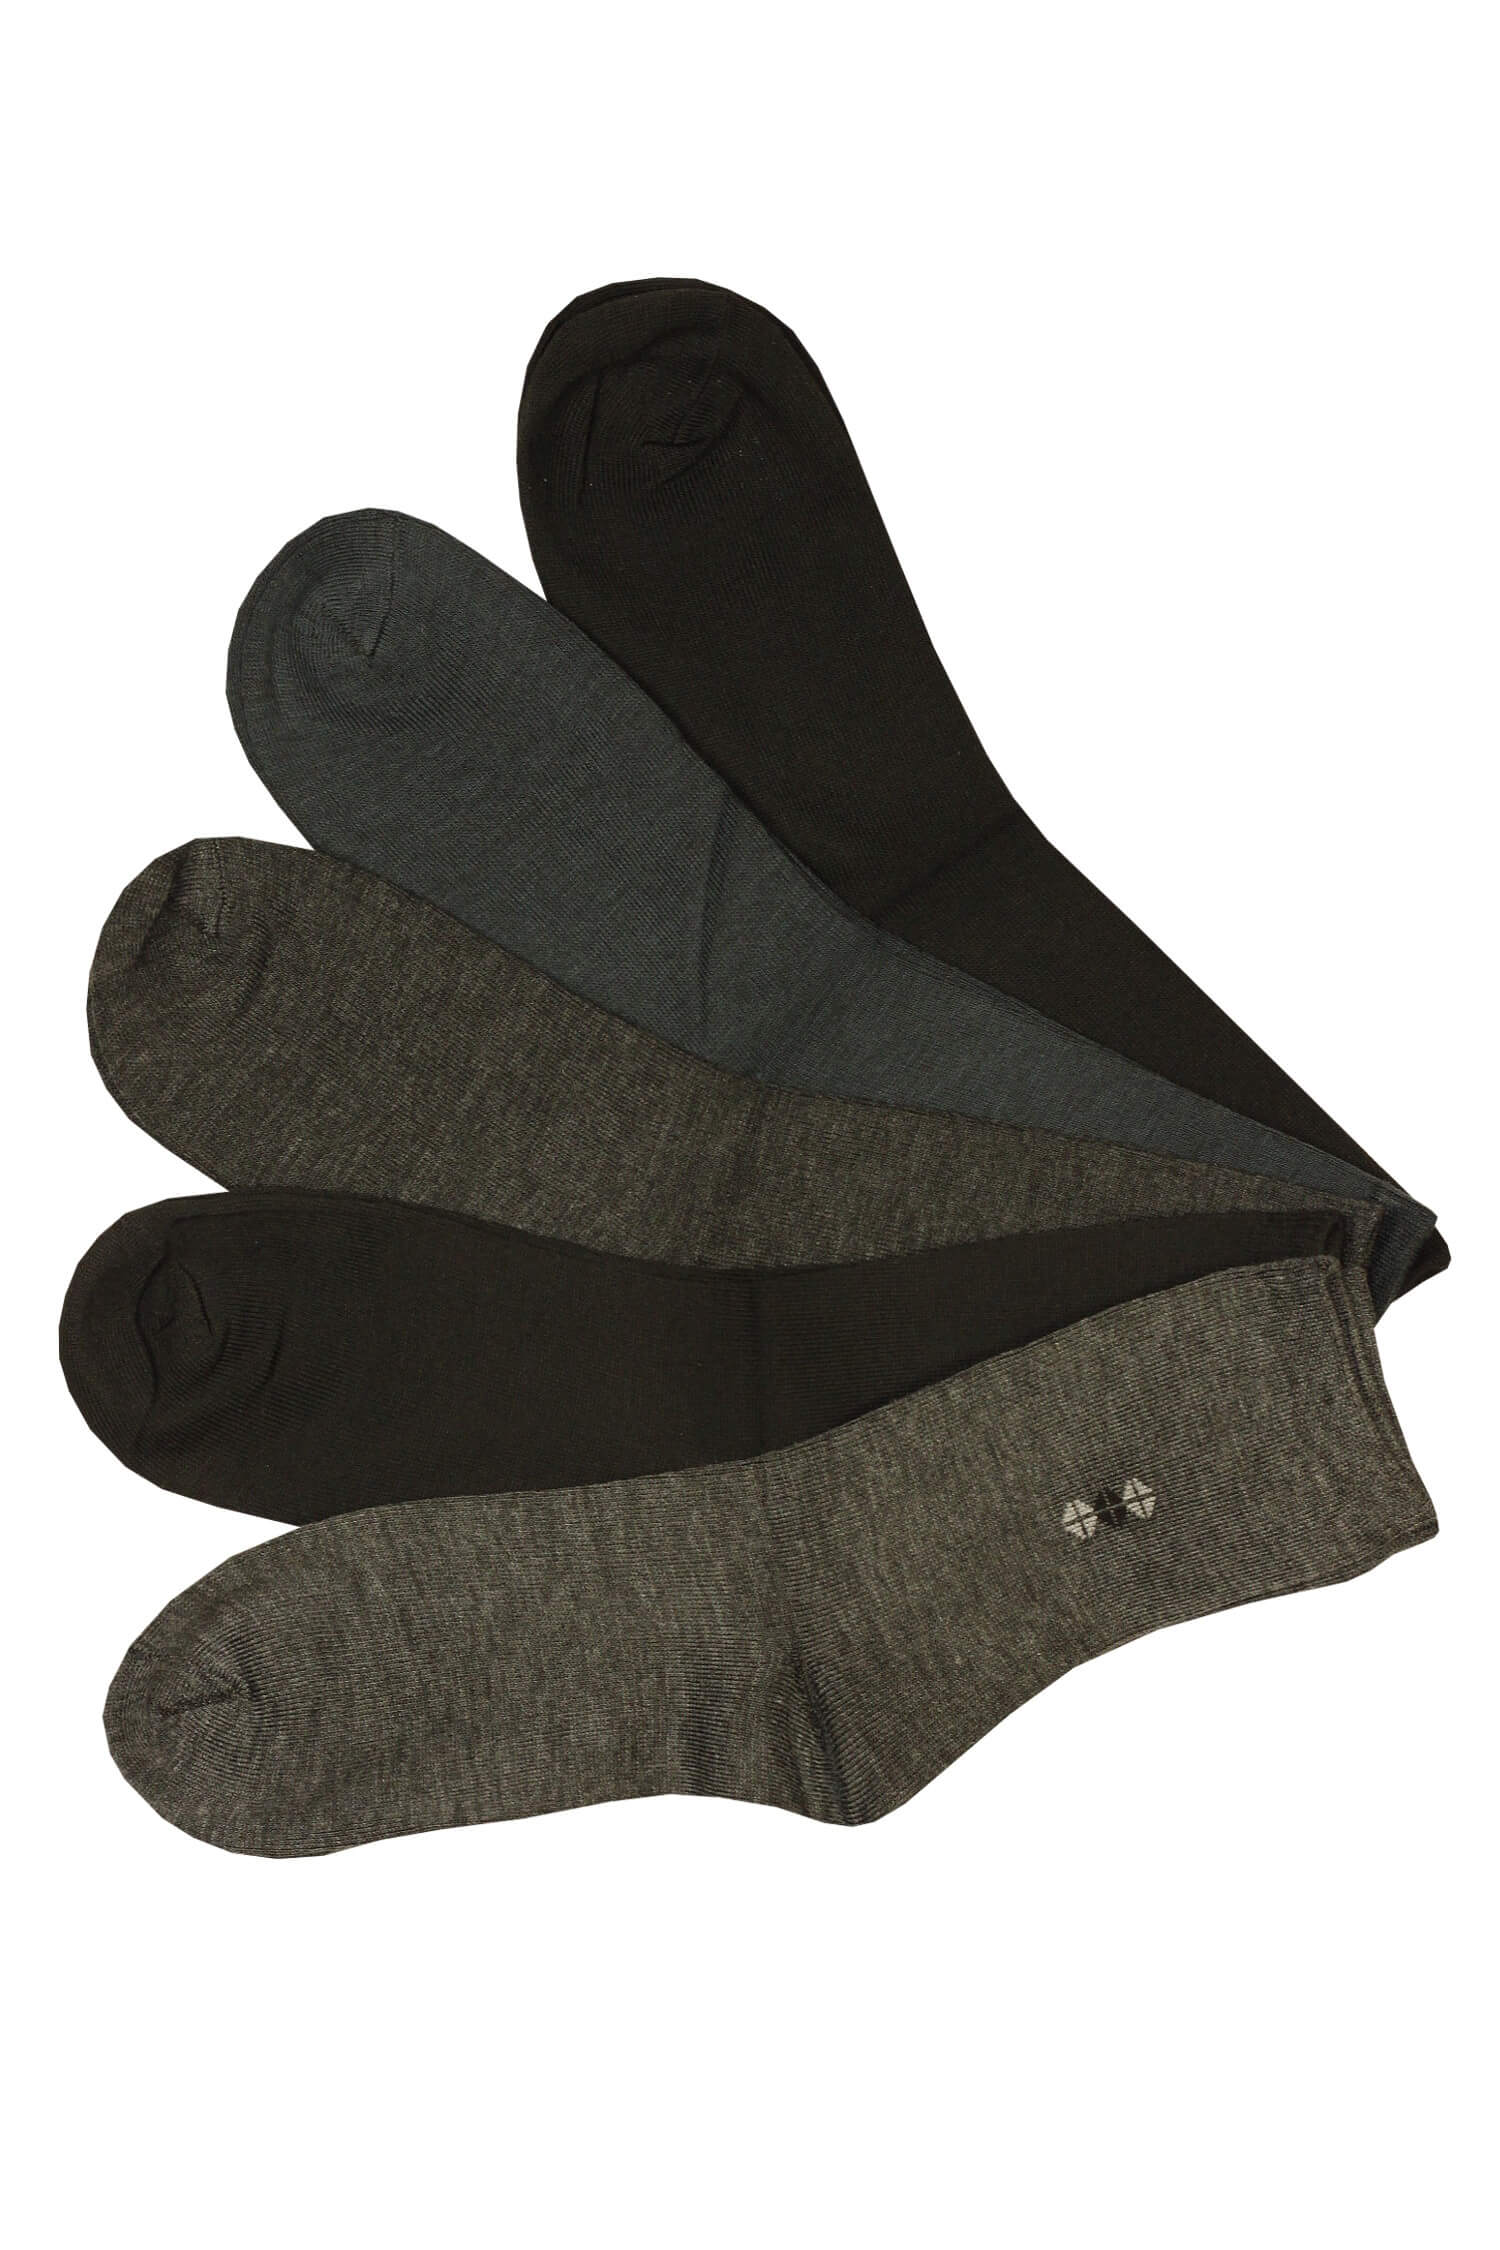 ROTA vysoké ponožky pro pány bavlněné B-021 5bal. 39-42 vícebarevná